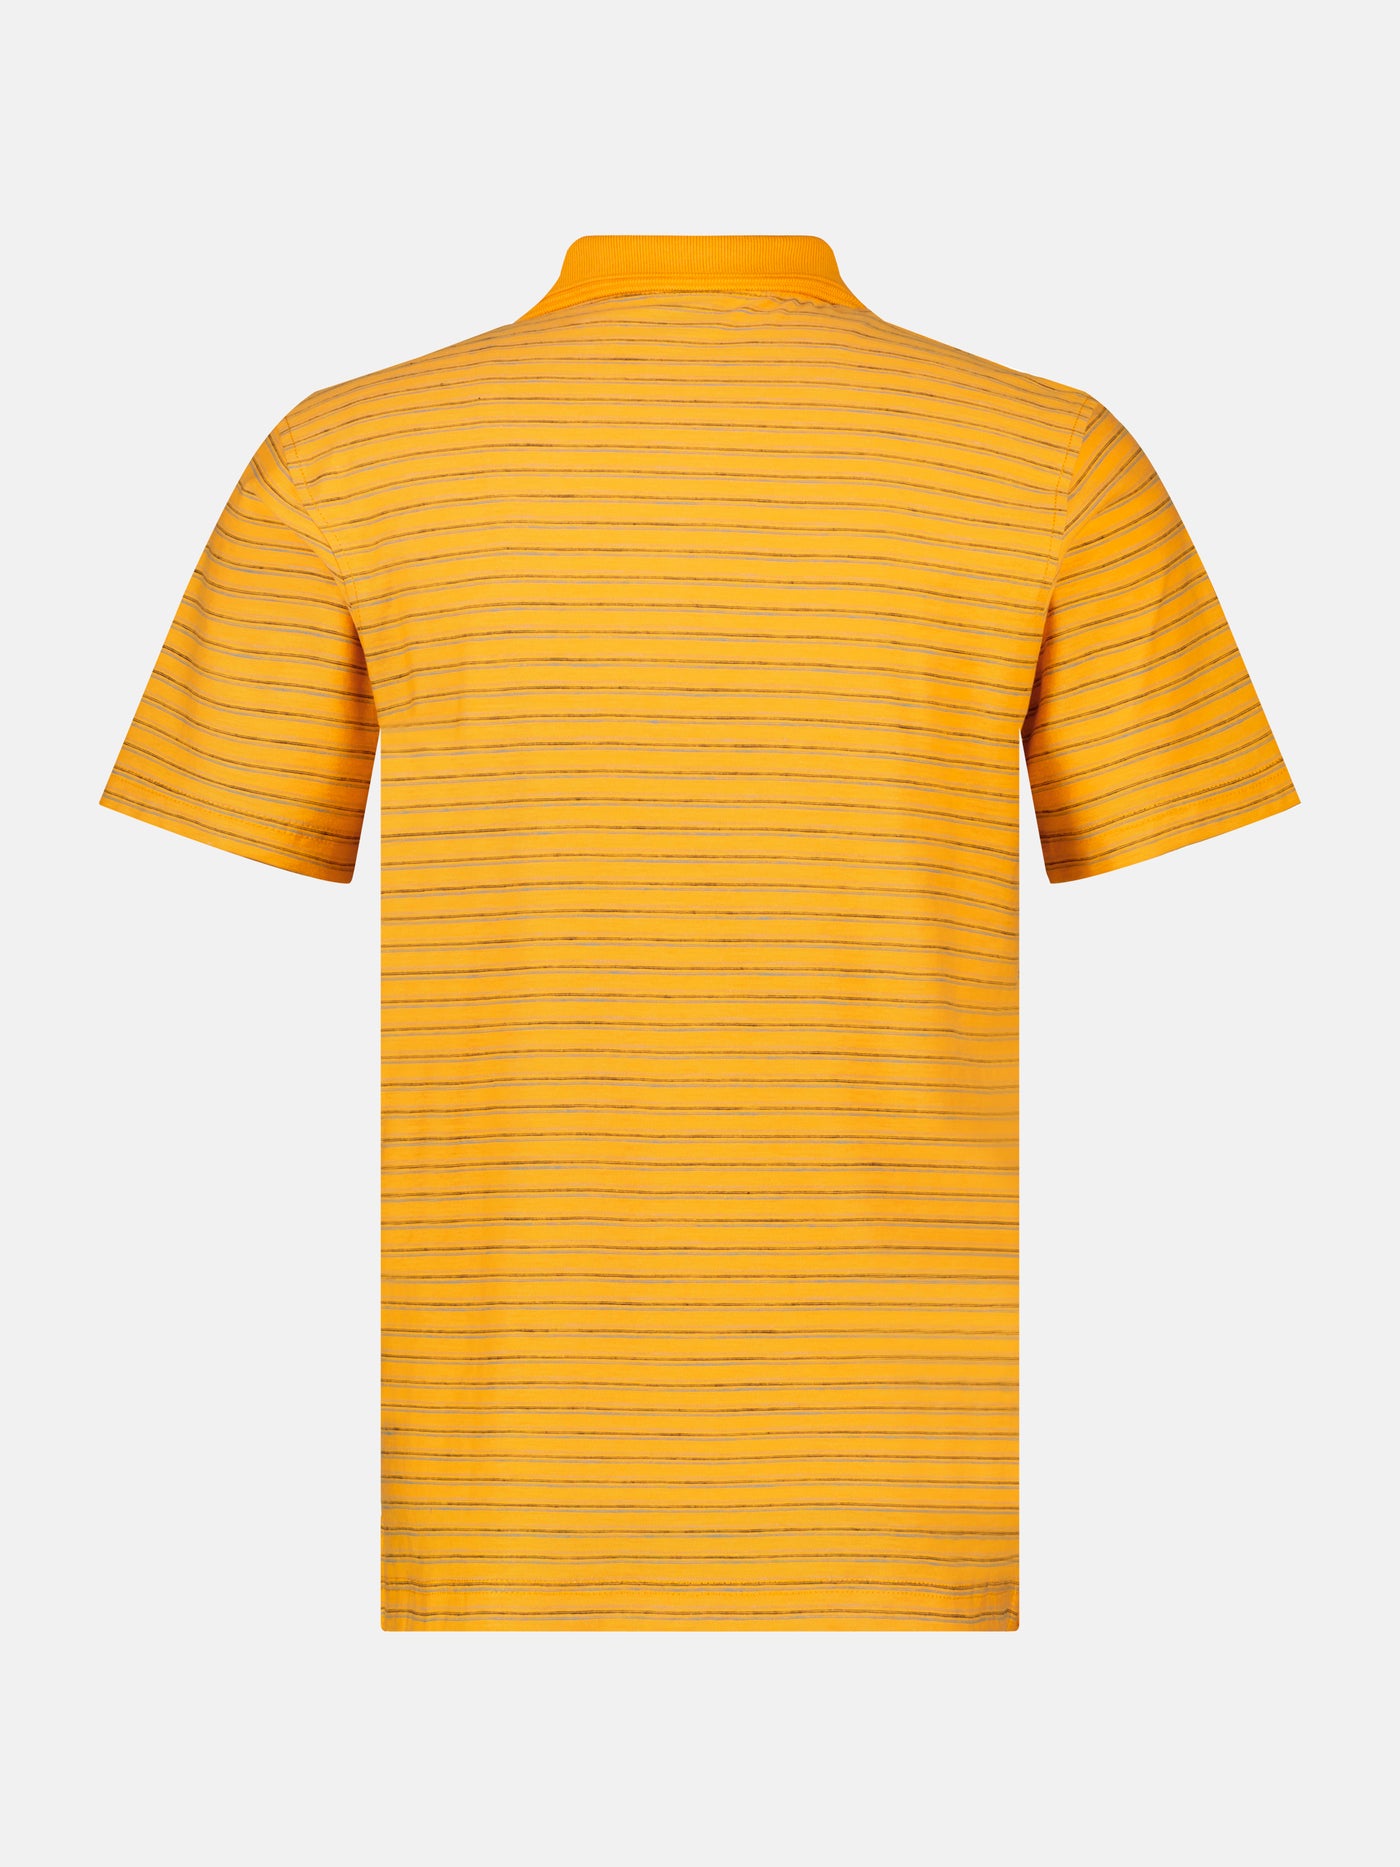 Men's polo shirt, striped